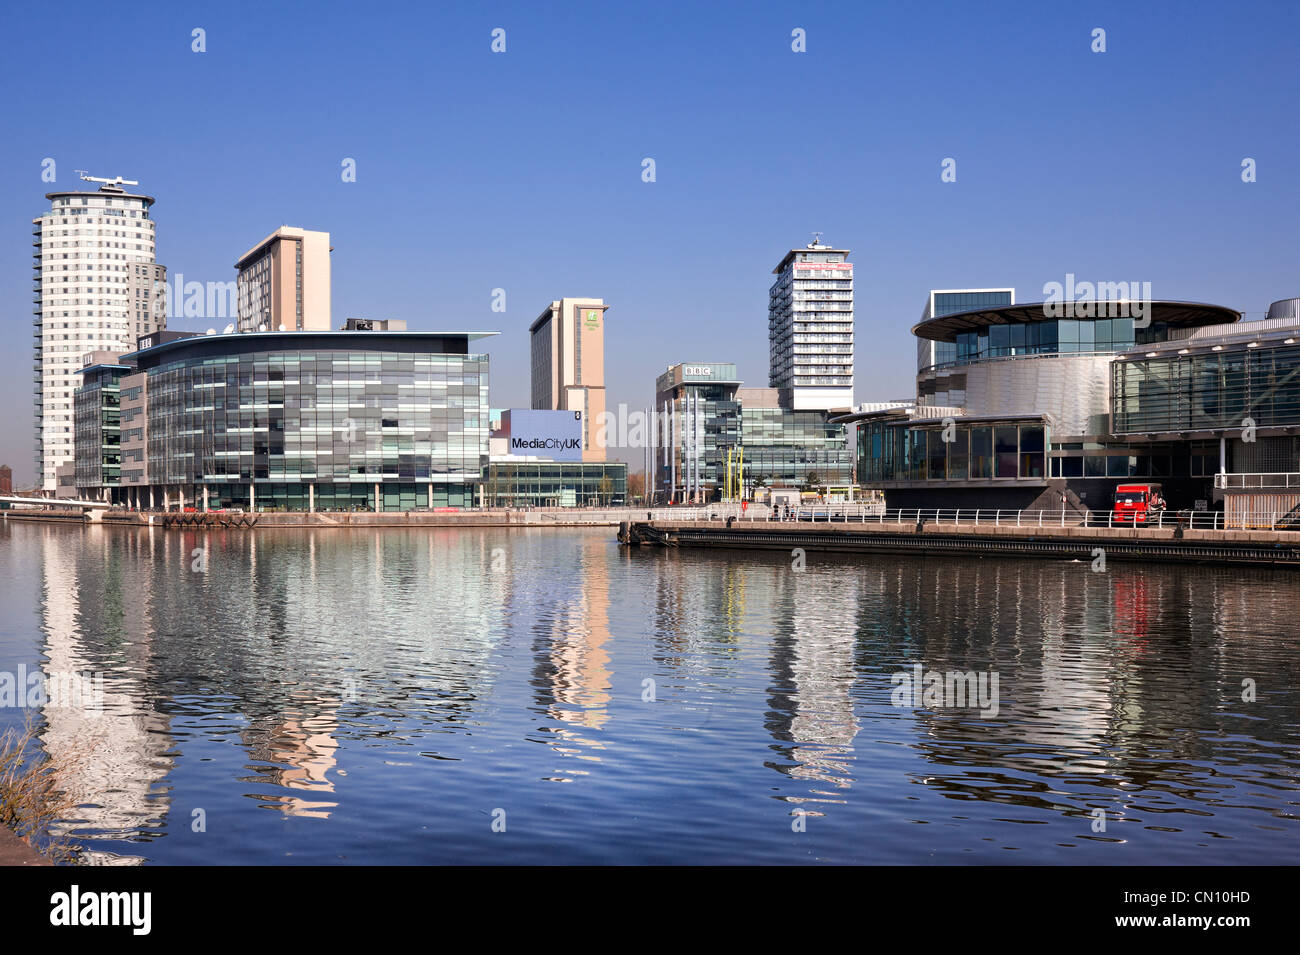 Über den Manchester Ship Canal schauend Medienstadt UK nach links und die Quays-Theatre in The Lowry nach rechts. Stockfoto